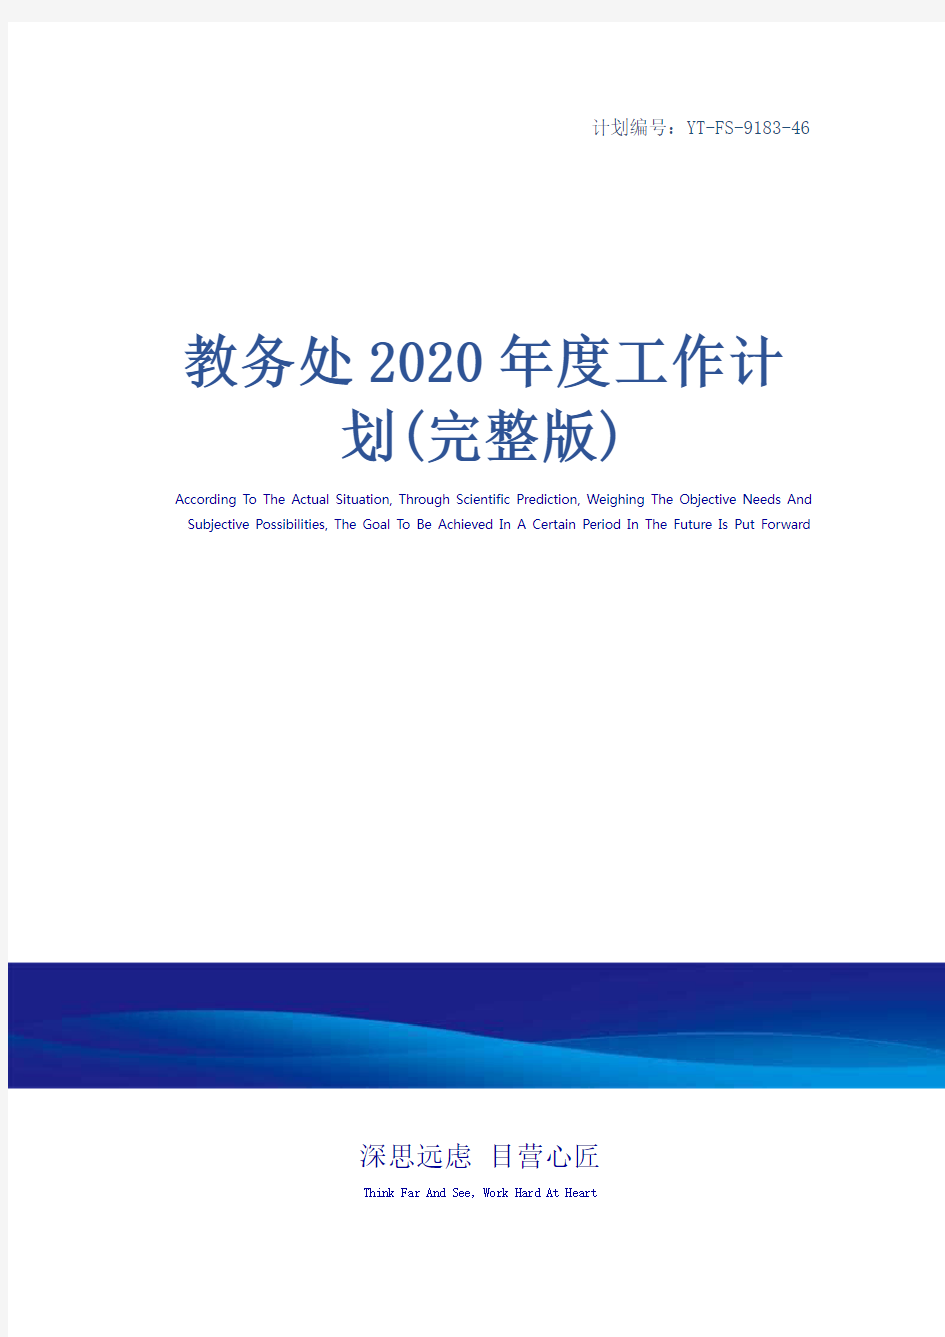 教务处2020年度工作计划(完整版)